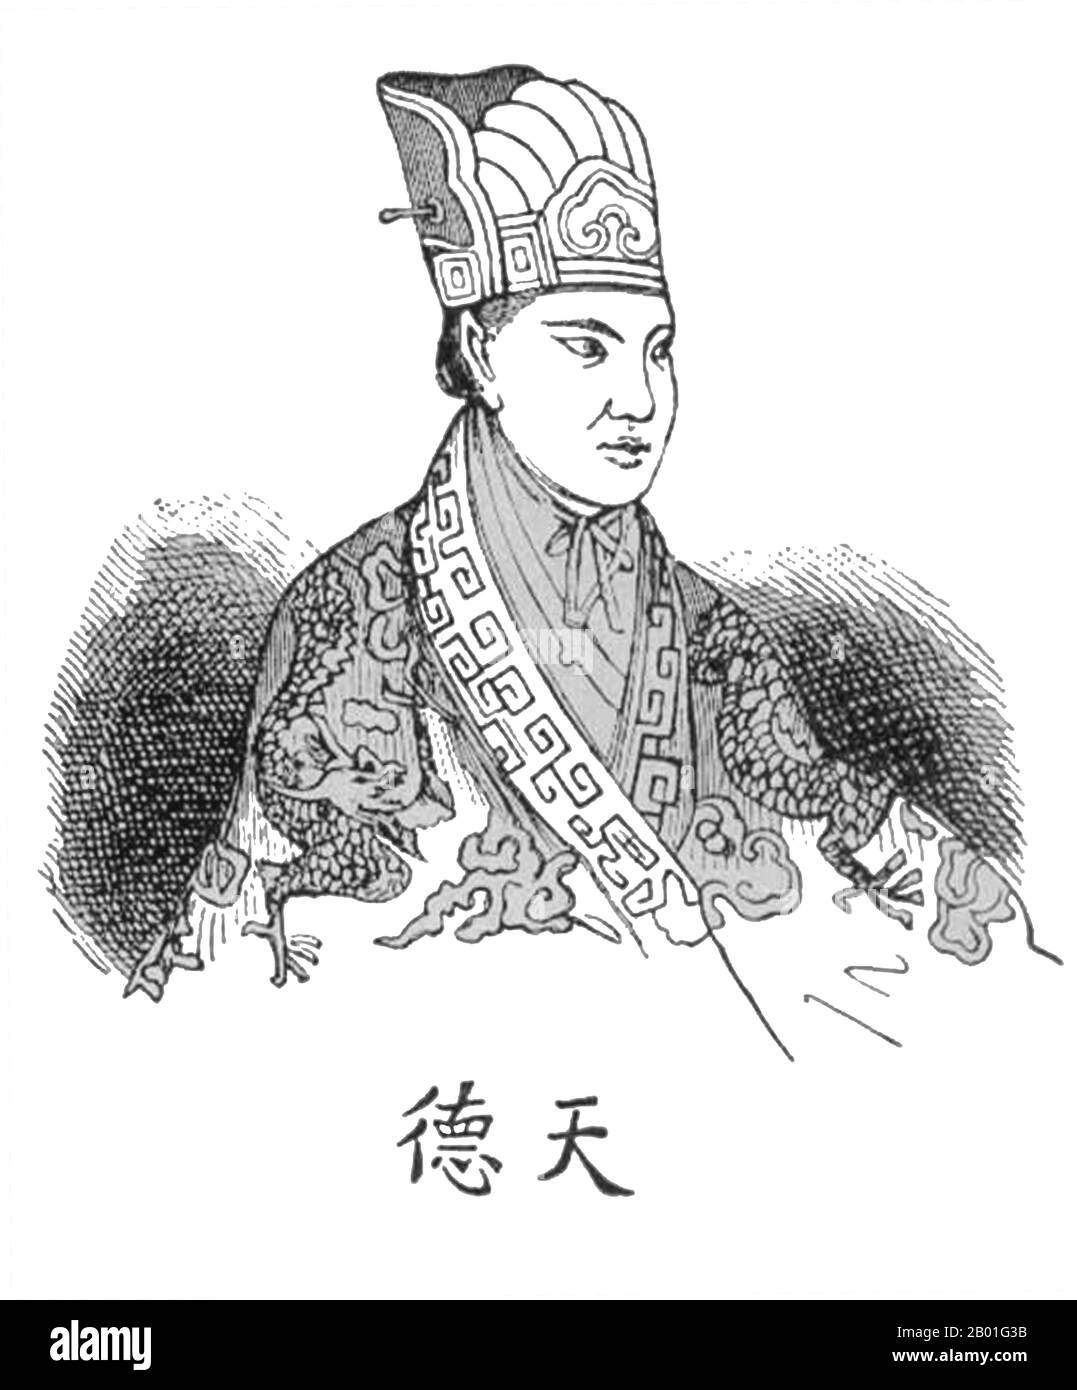 Cina: Hong Xiuquan (1 gennaio 1814 - 1 giugno 1864), leader e 're celeste' del Regno celeste di Taiping, meglio conosciuto come la ribellione di Taiping (1850-1864). Incisione, 1853. I personaggi cinesi sotto la sua immagine hanno letto 'Tian De' o Heavenly Virtue'. Hong Xiguquan, nato Hong Renkun e nome di stile Huoxiu, era un cinese Hakka che guidò la ribellione Taiping contro la dinastia Qing, stabilendo il regno celeste Taiping su varie parti della Cina meridionale, con se stesso come il 're celeste' e autoproclamato fratello di Gesù Cristo. Foto Stock